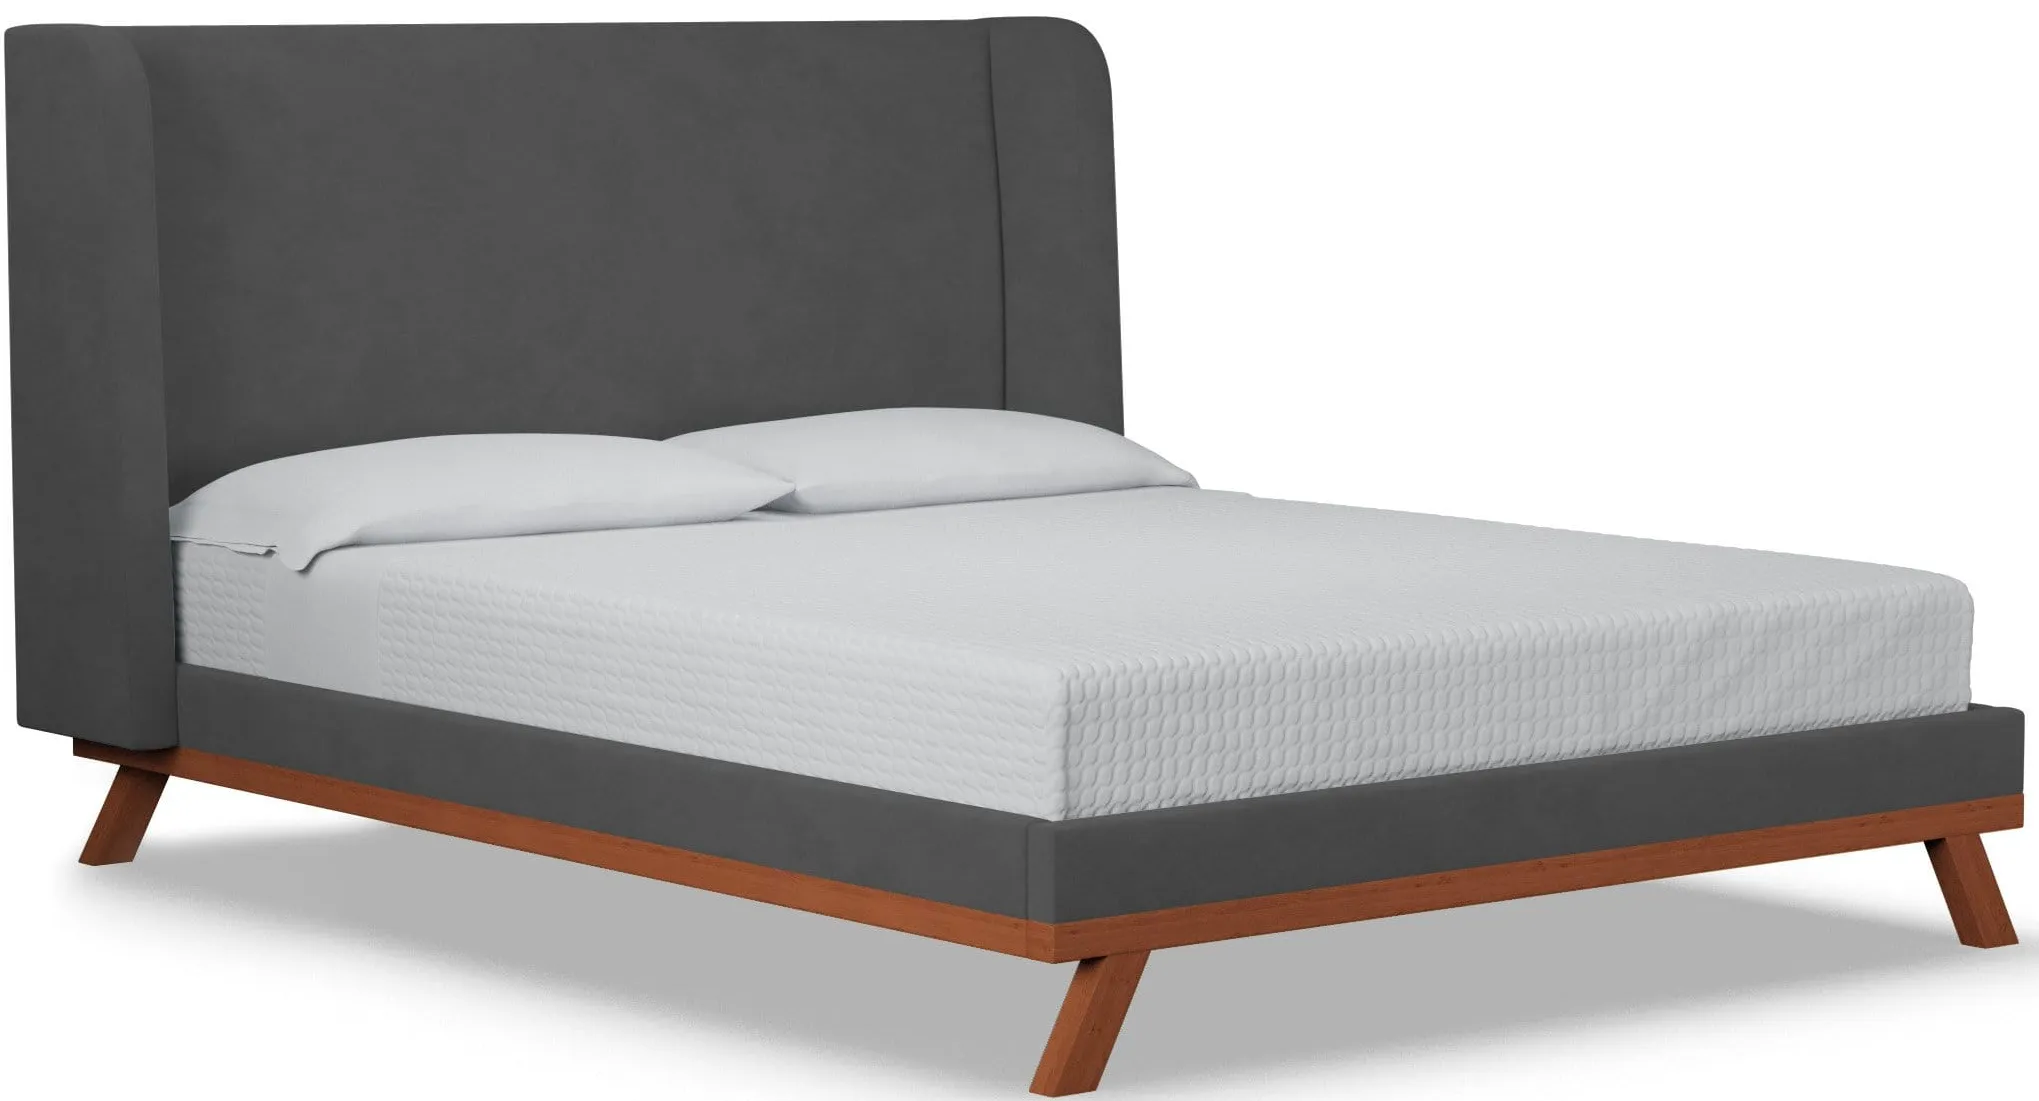 Tatum Upholstered Platform Bed